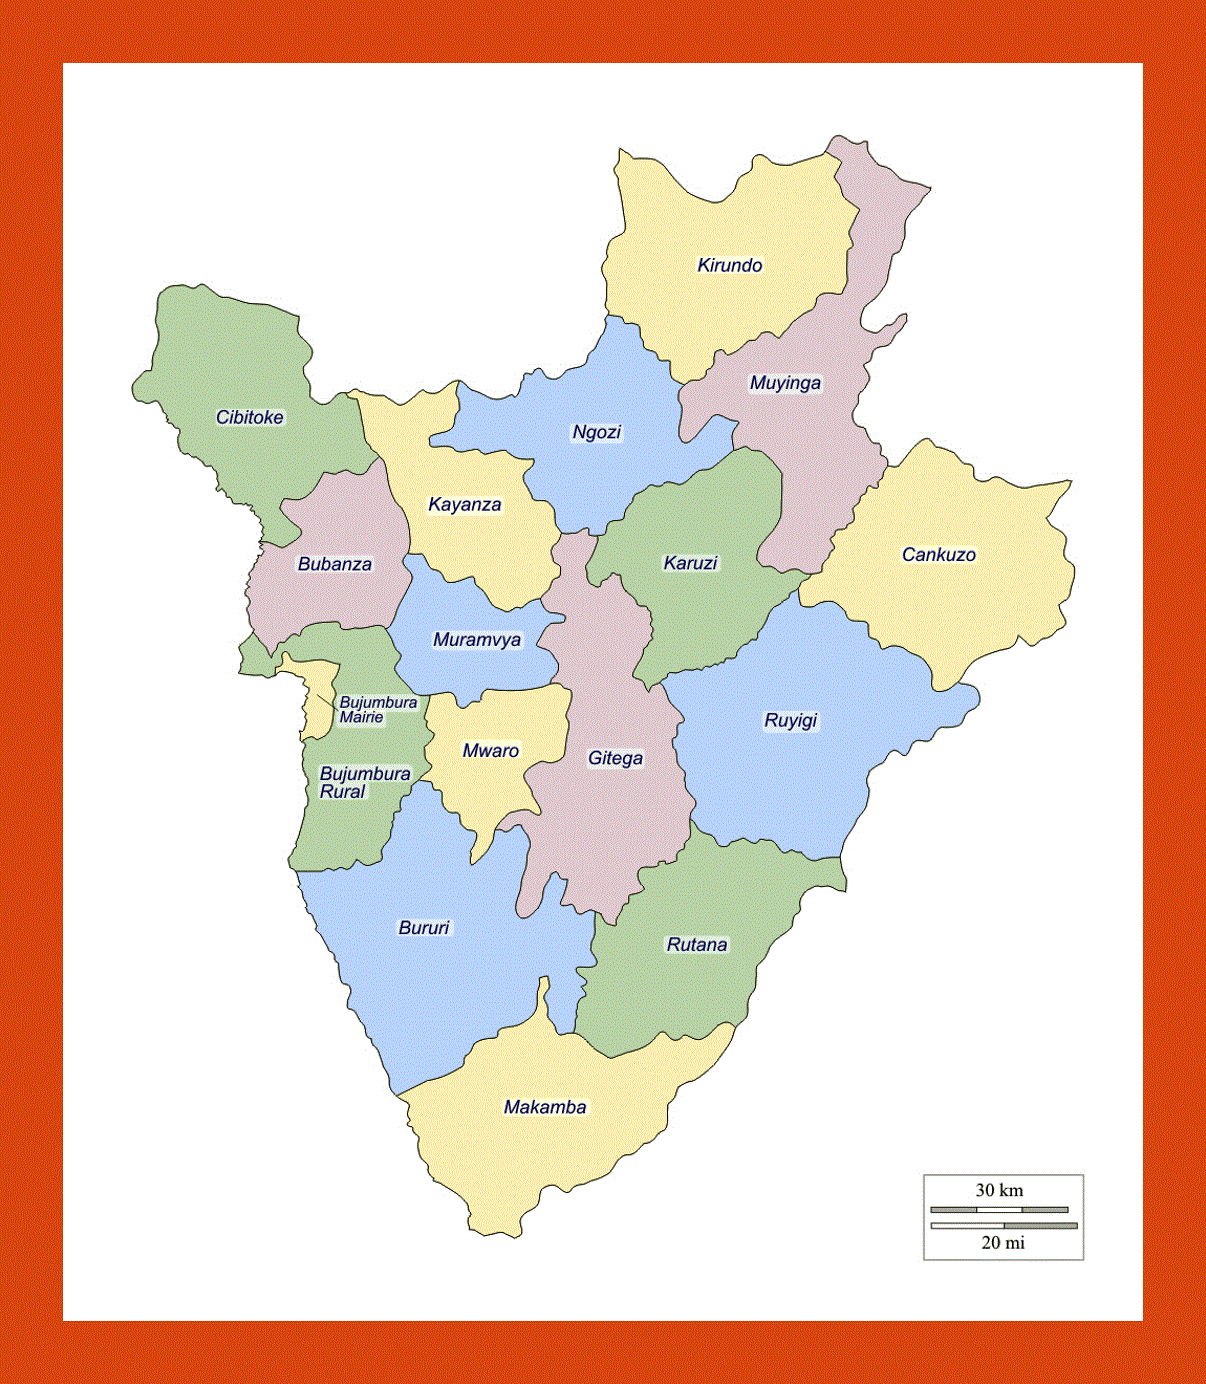 Administrative divisions map of Burundi